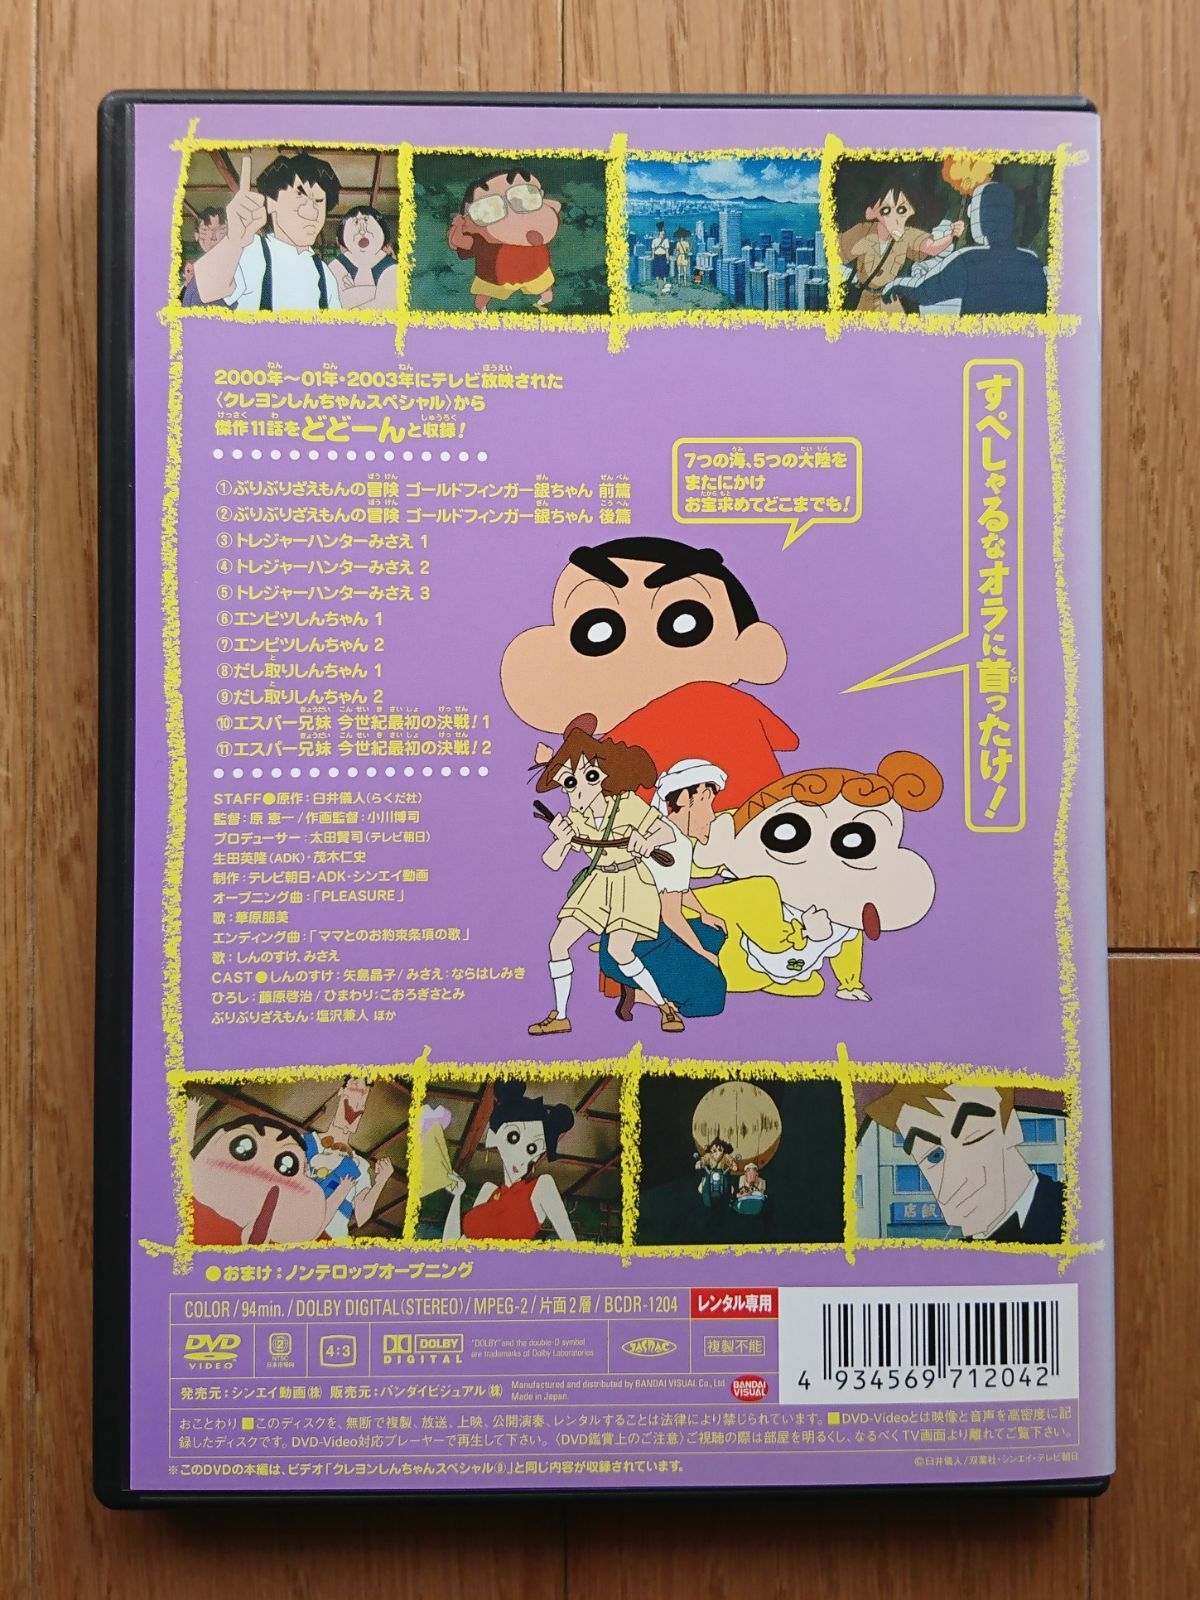 【レンタル版DVD】クレヨンしんちゃん スペシャル 9 ※ジャケット傷みあり